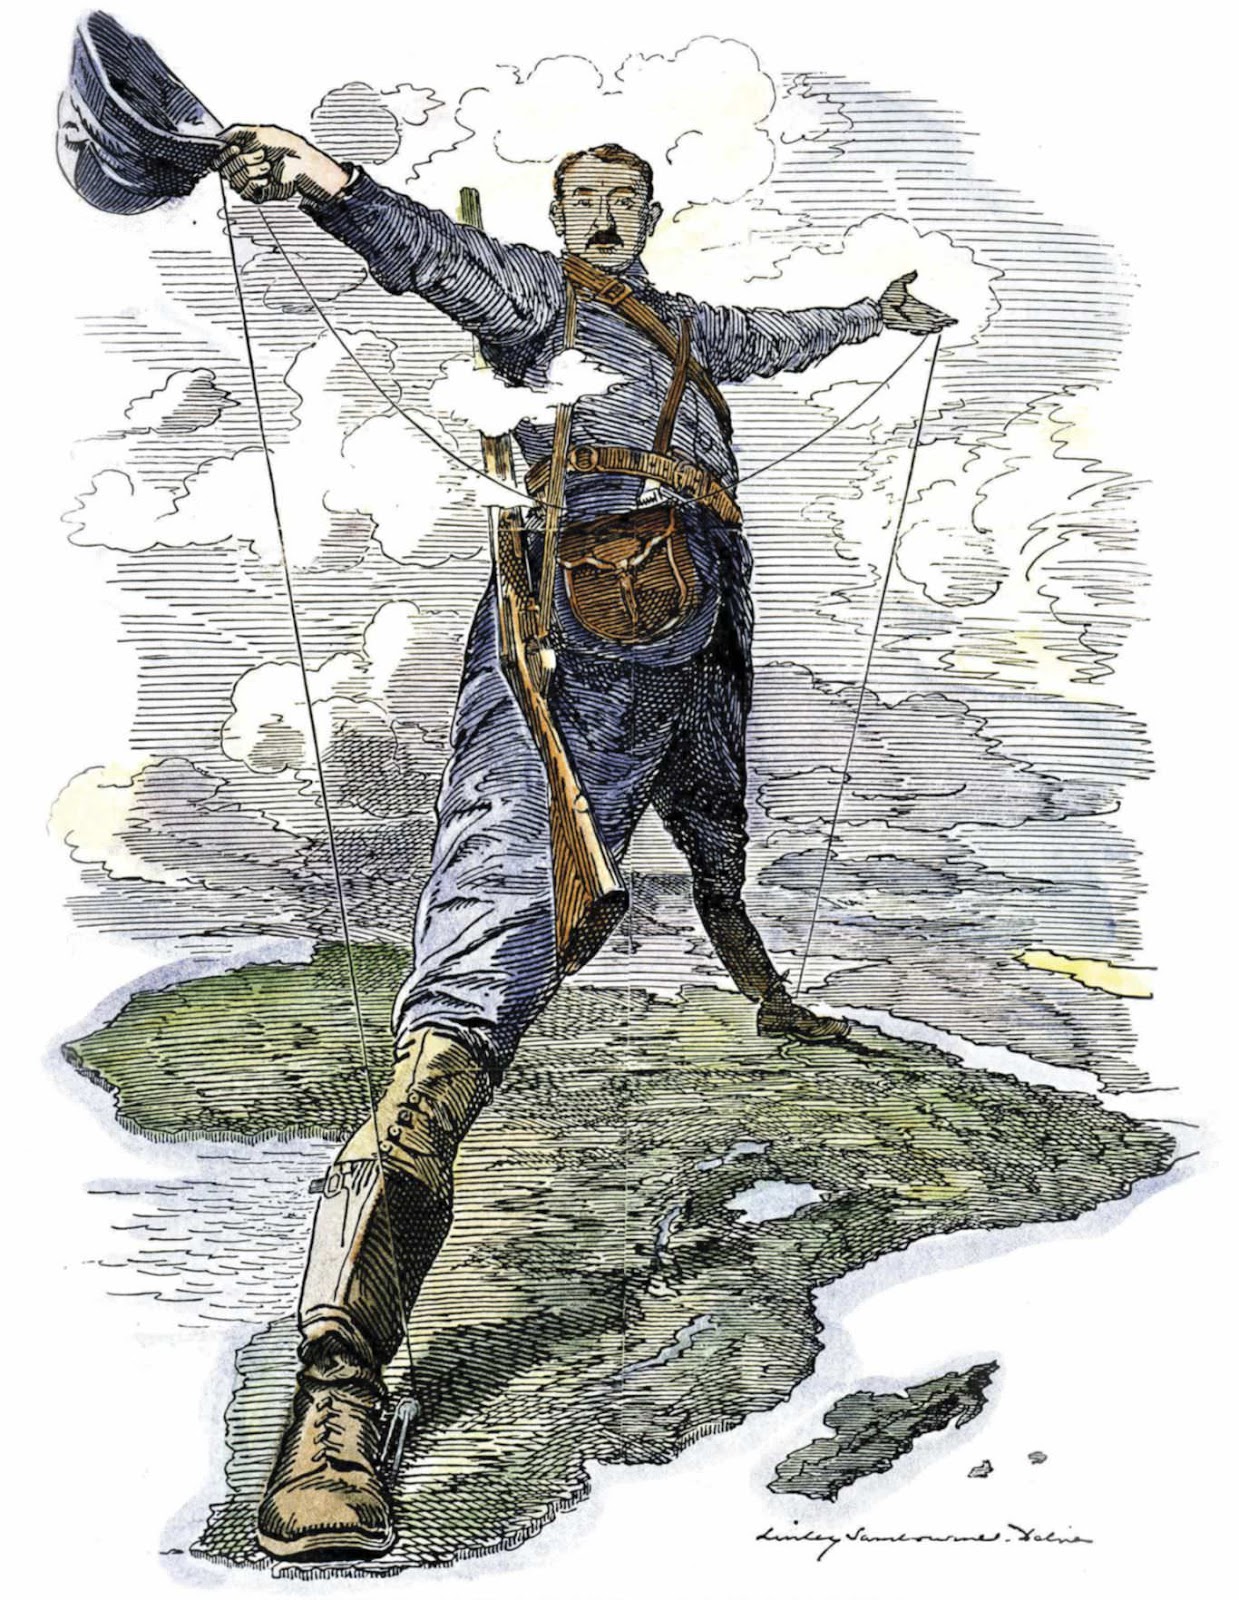 Зображення 1. Колос Родса. Карикатура в журналі Punch, 1892 рік. Джерело: wikipedia.org.